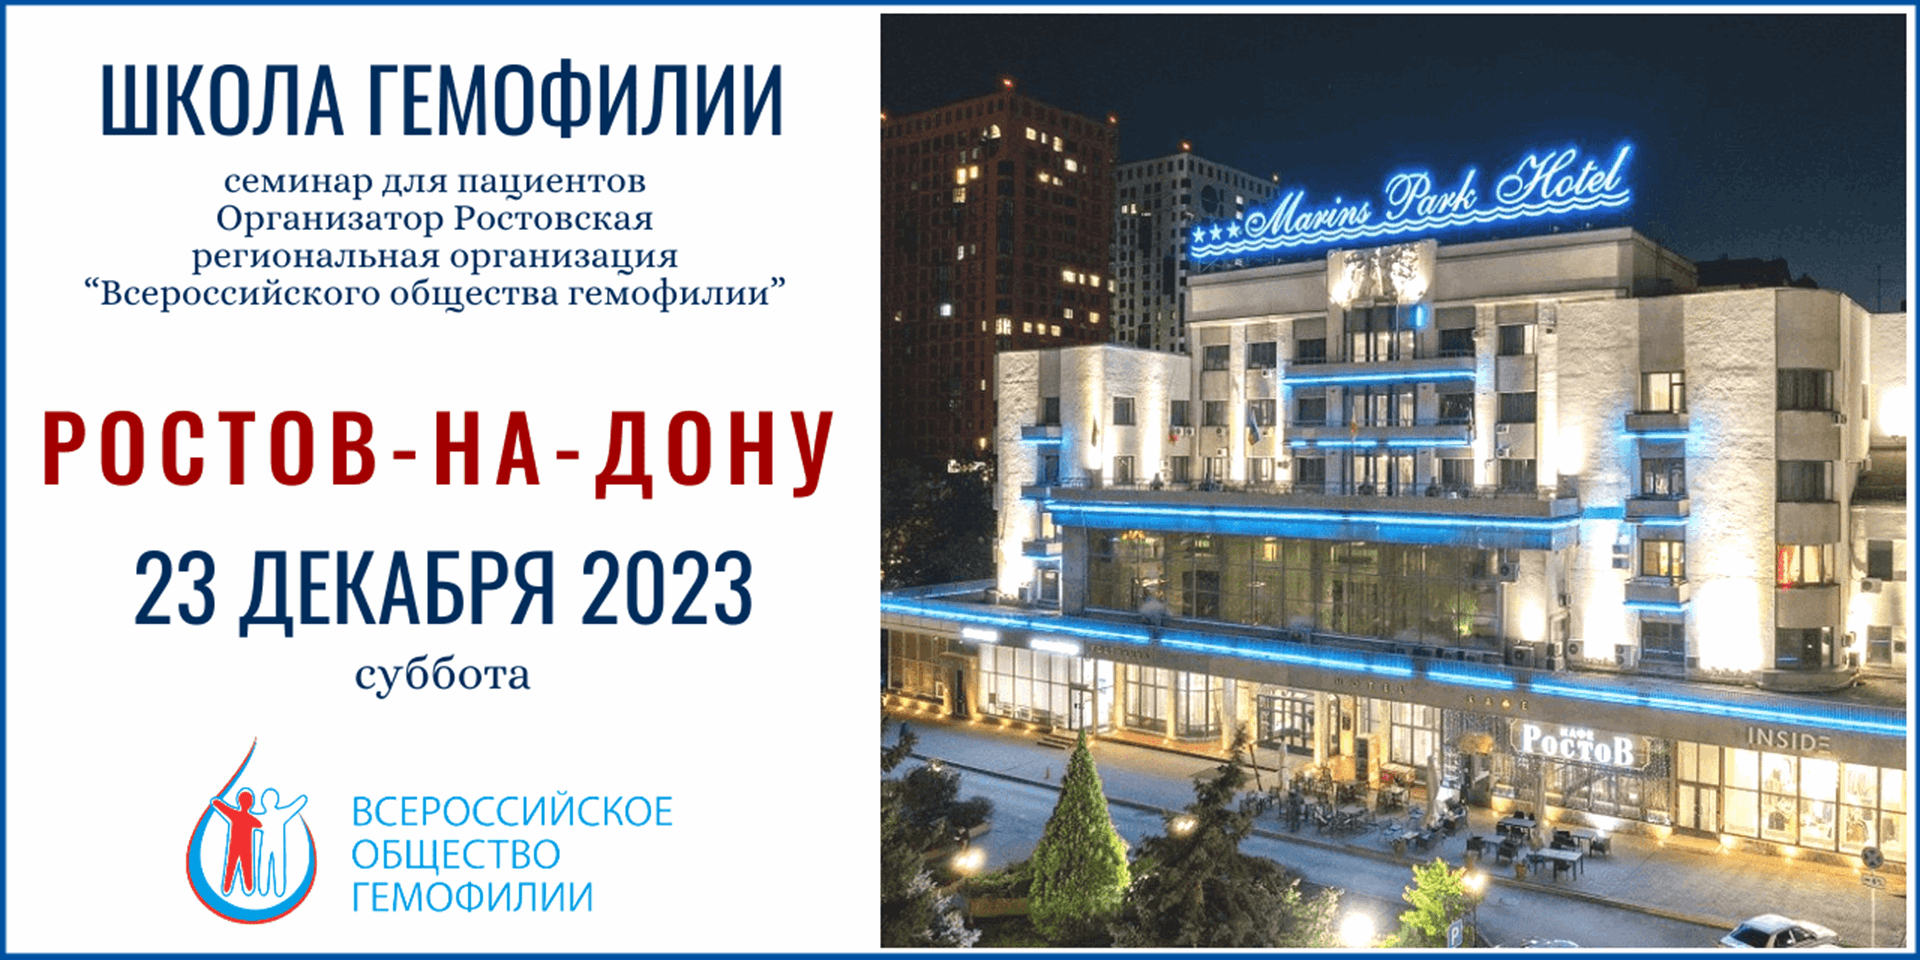 Анонс! Школа гемофилии в Ростове-на-Дону запланирована на 23 декабря 2023